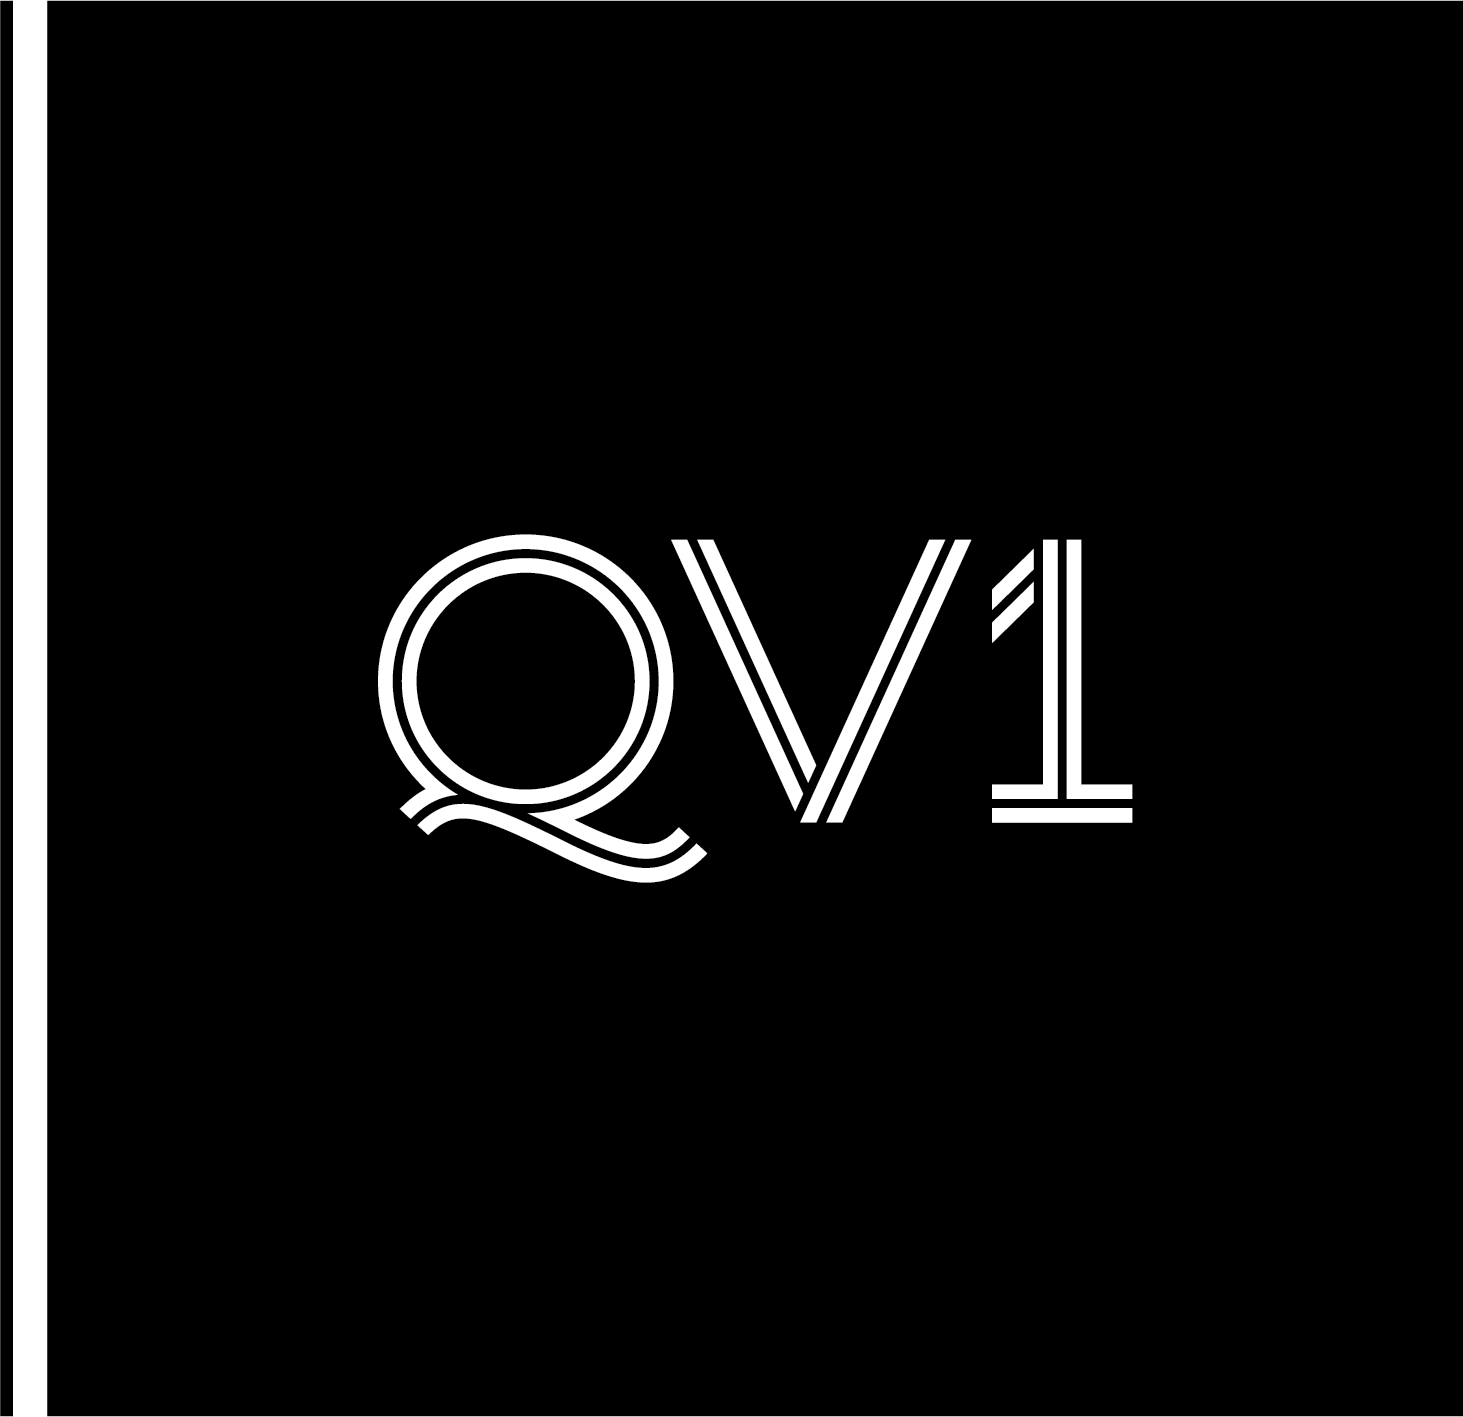 QV1